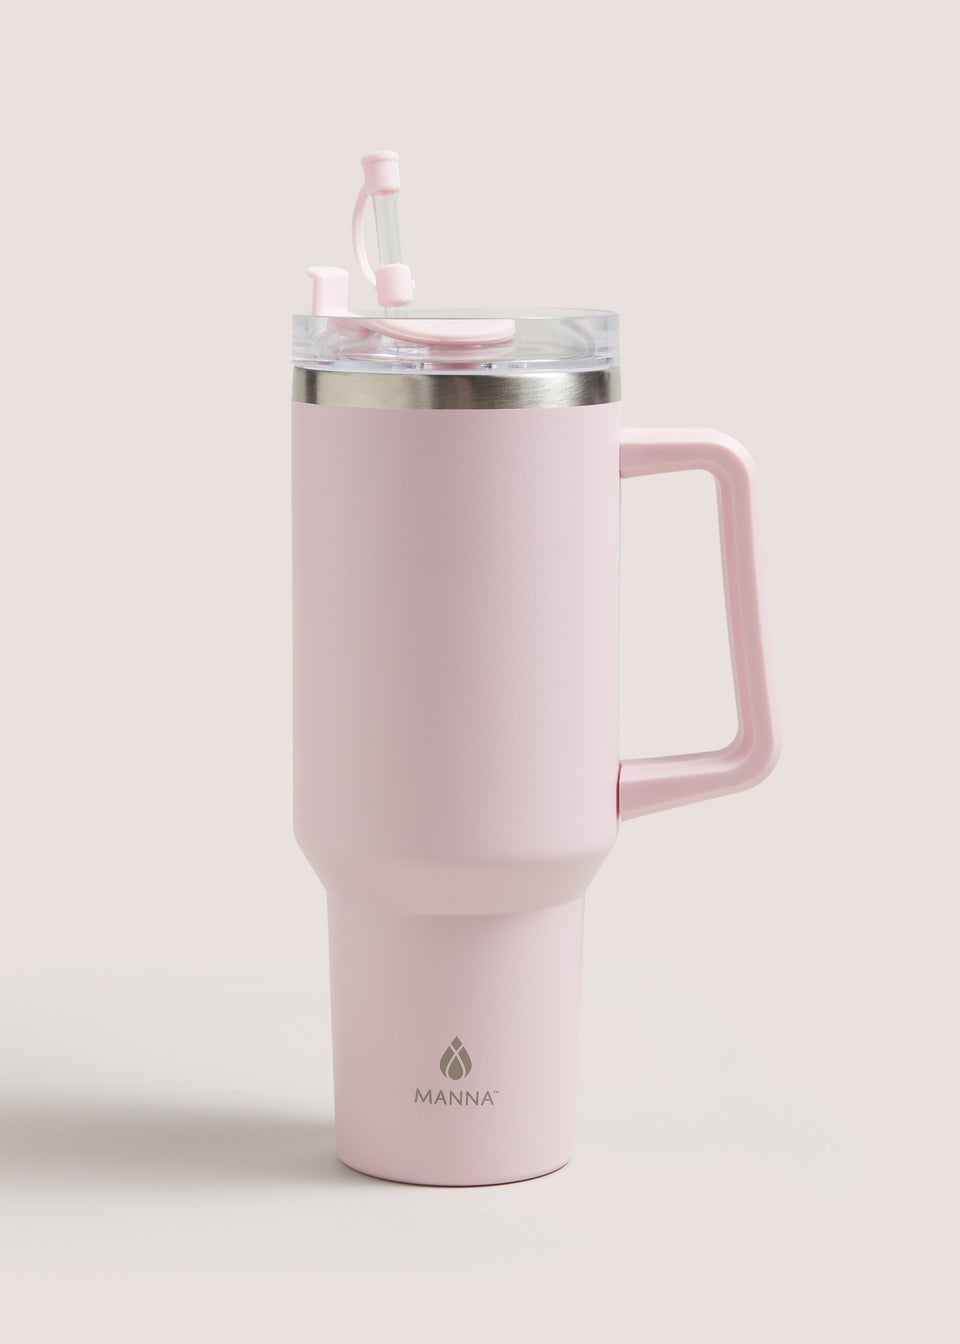 Manna Ranger Pink Cup (1.2L)